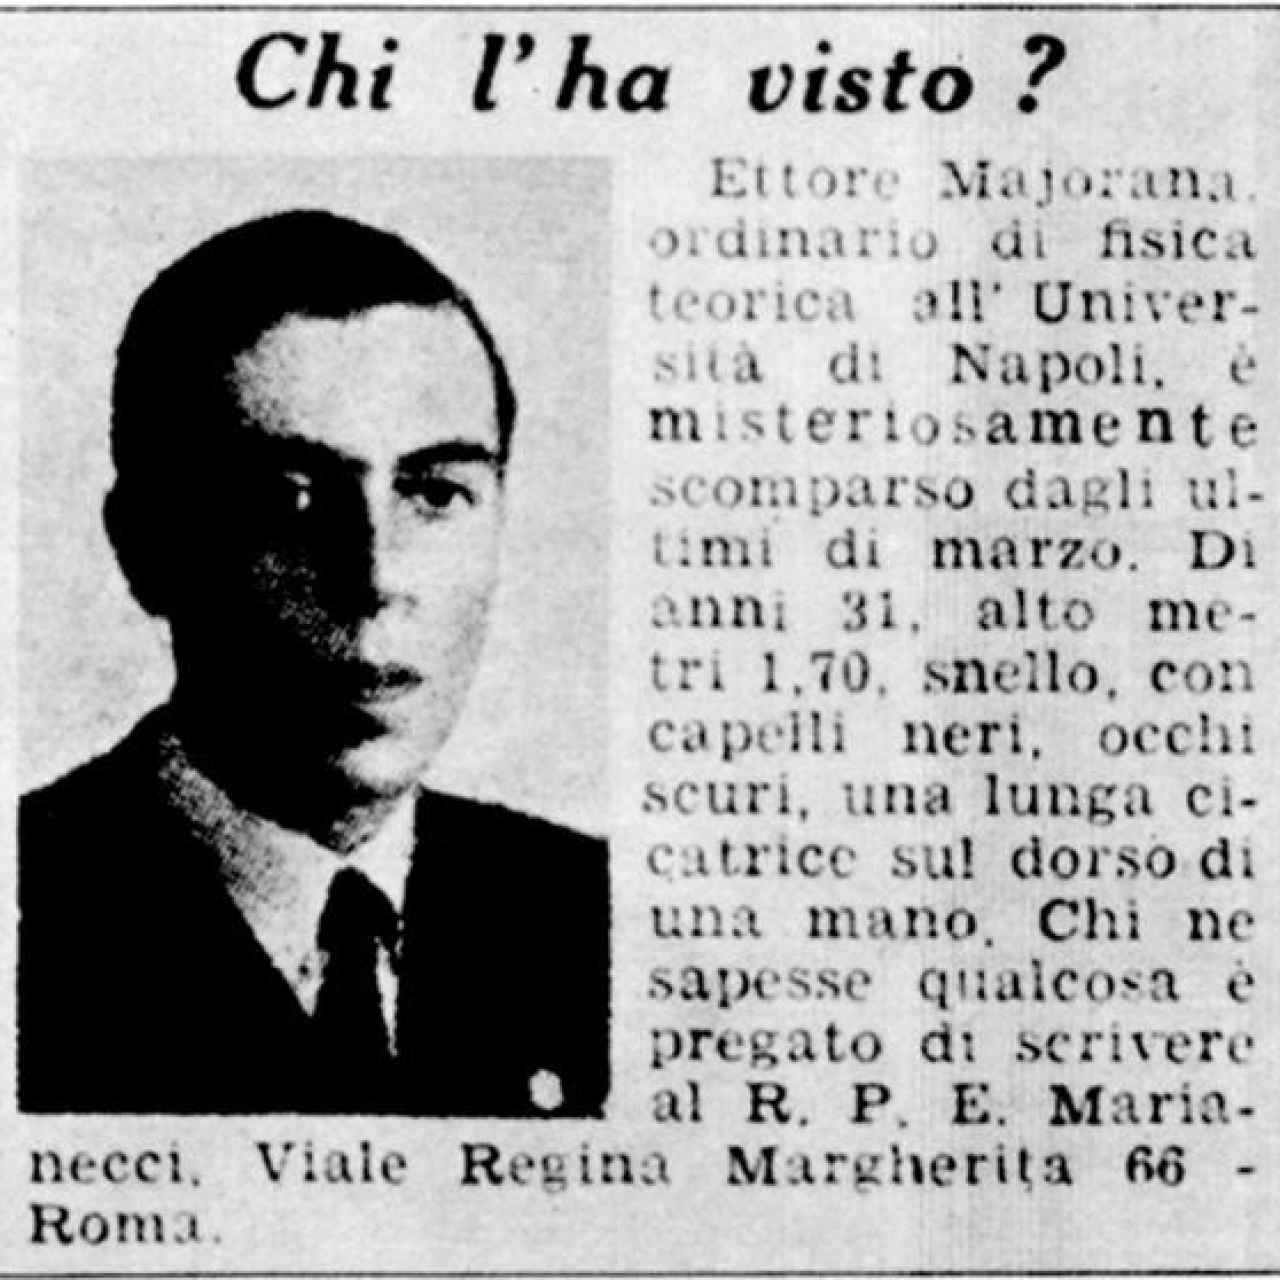 Anuncio de periódico en busca del paradero de Ettore Majorana, a los pocos días de su desaparición.